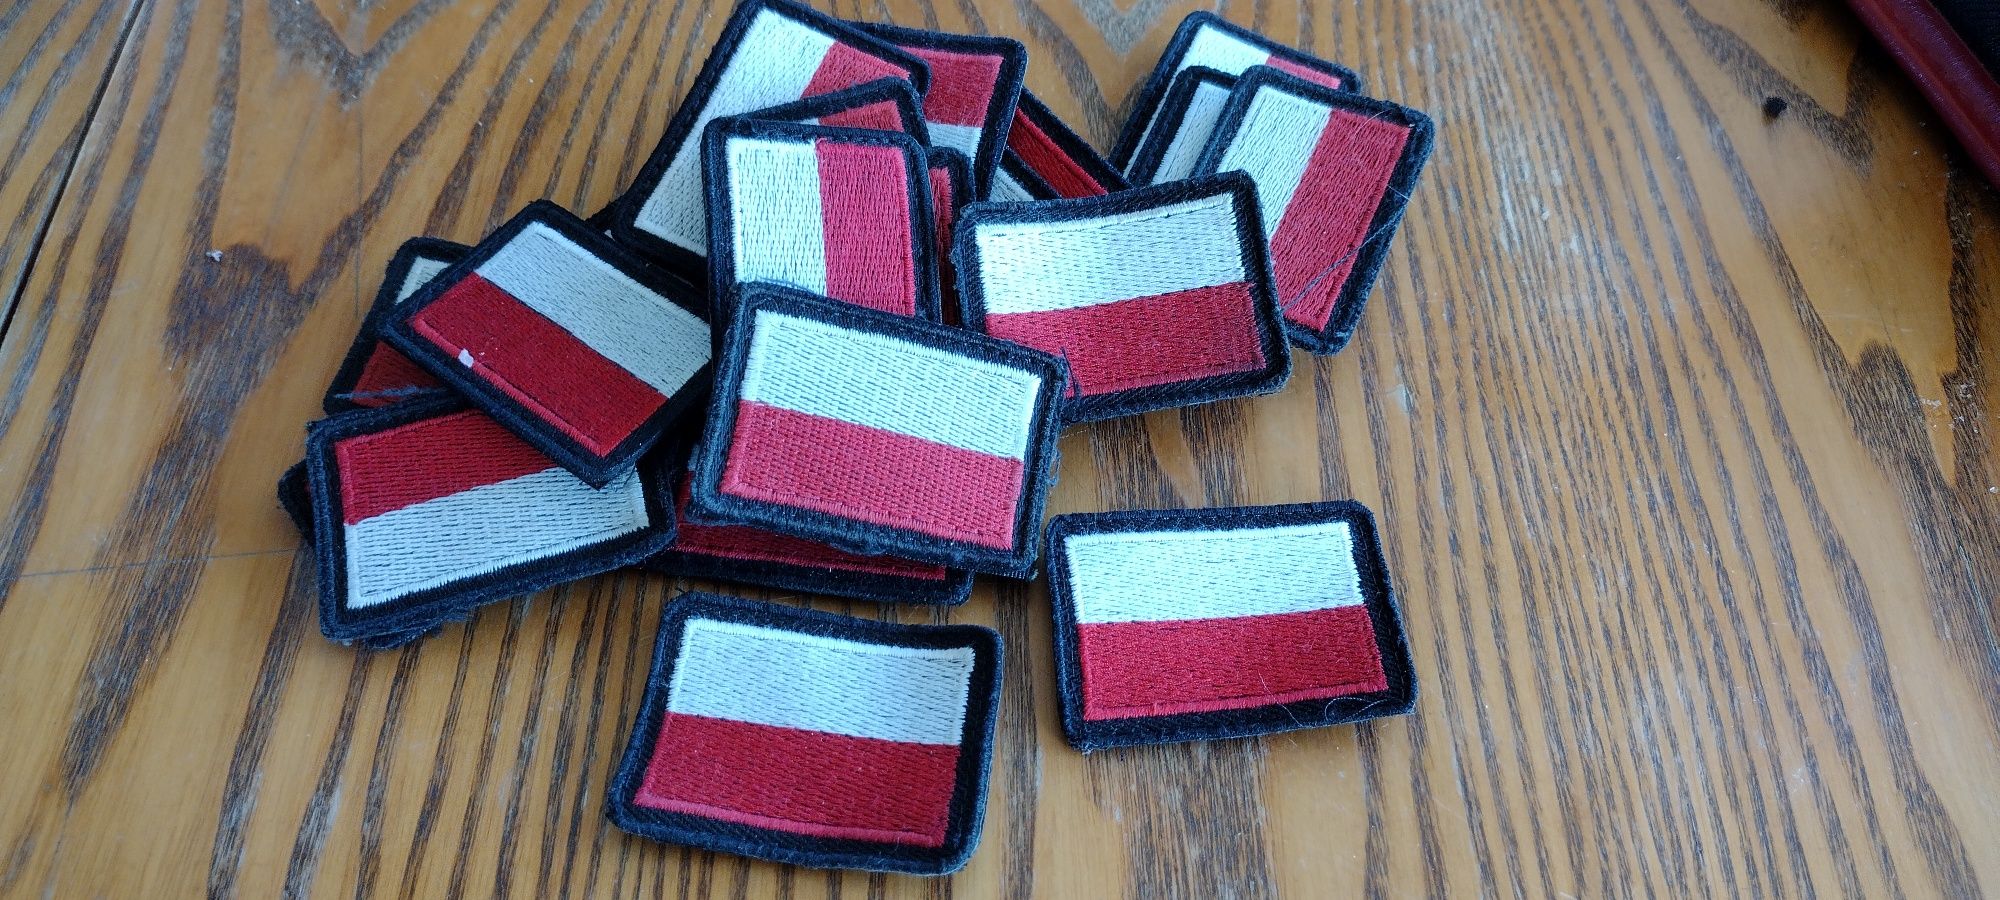 Flaga Polski do munduru wojskowego